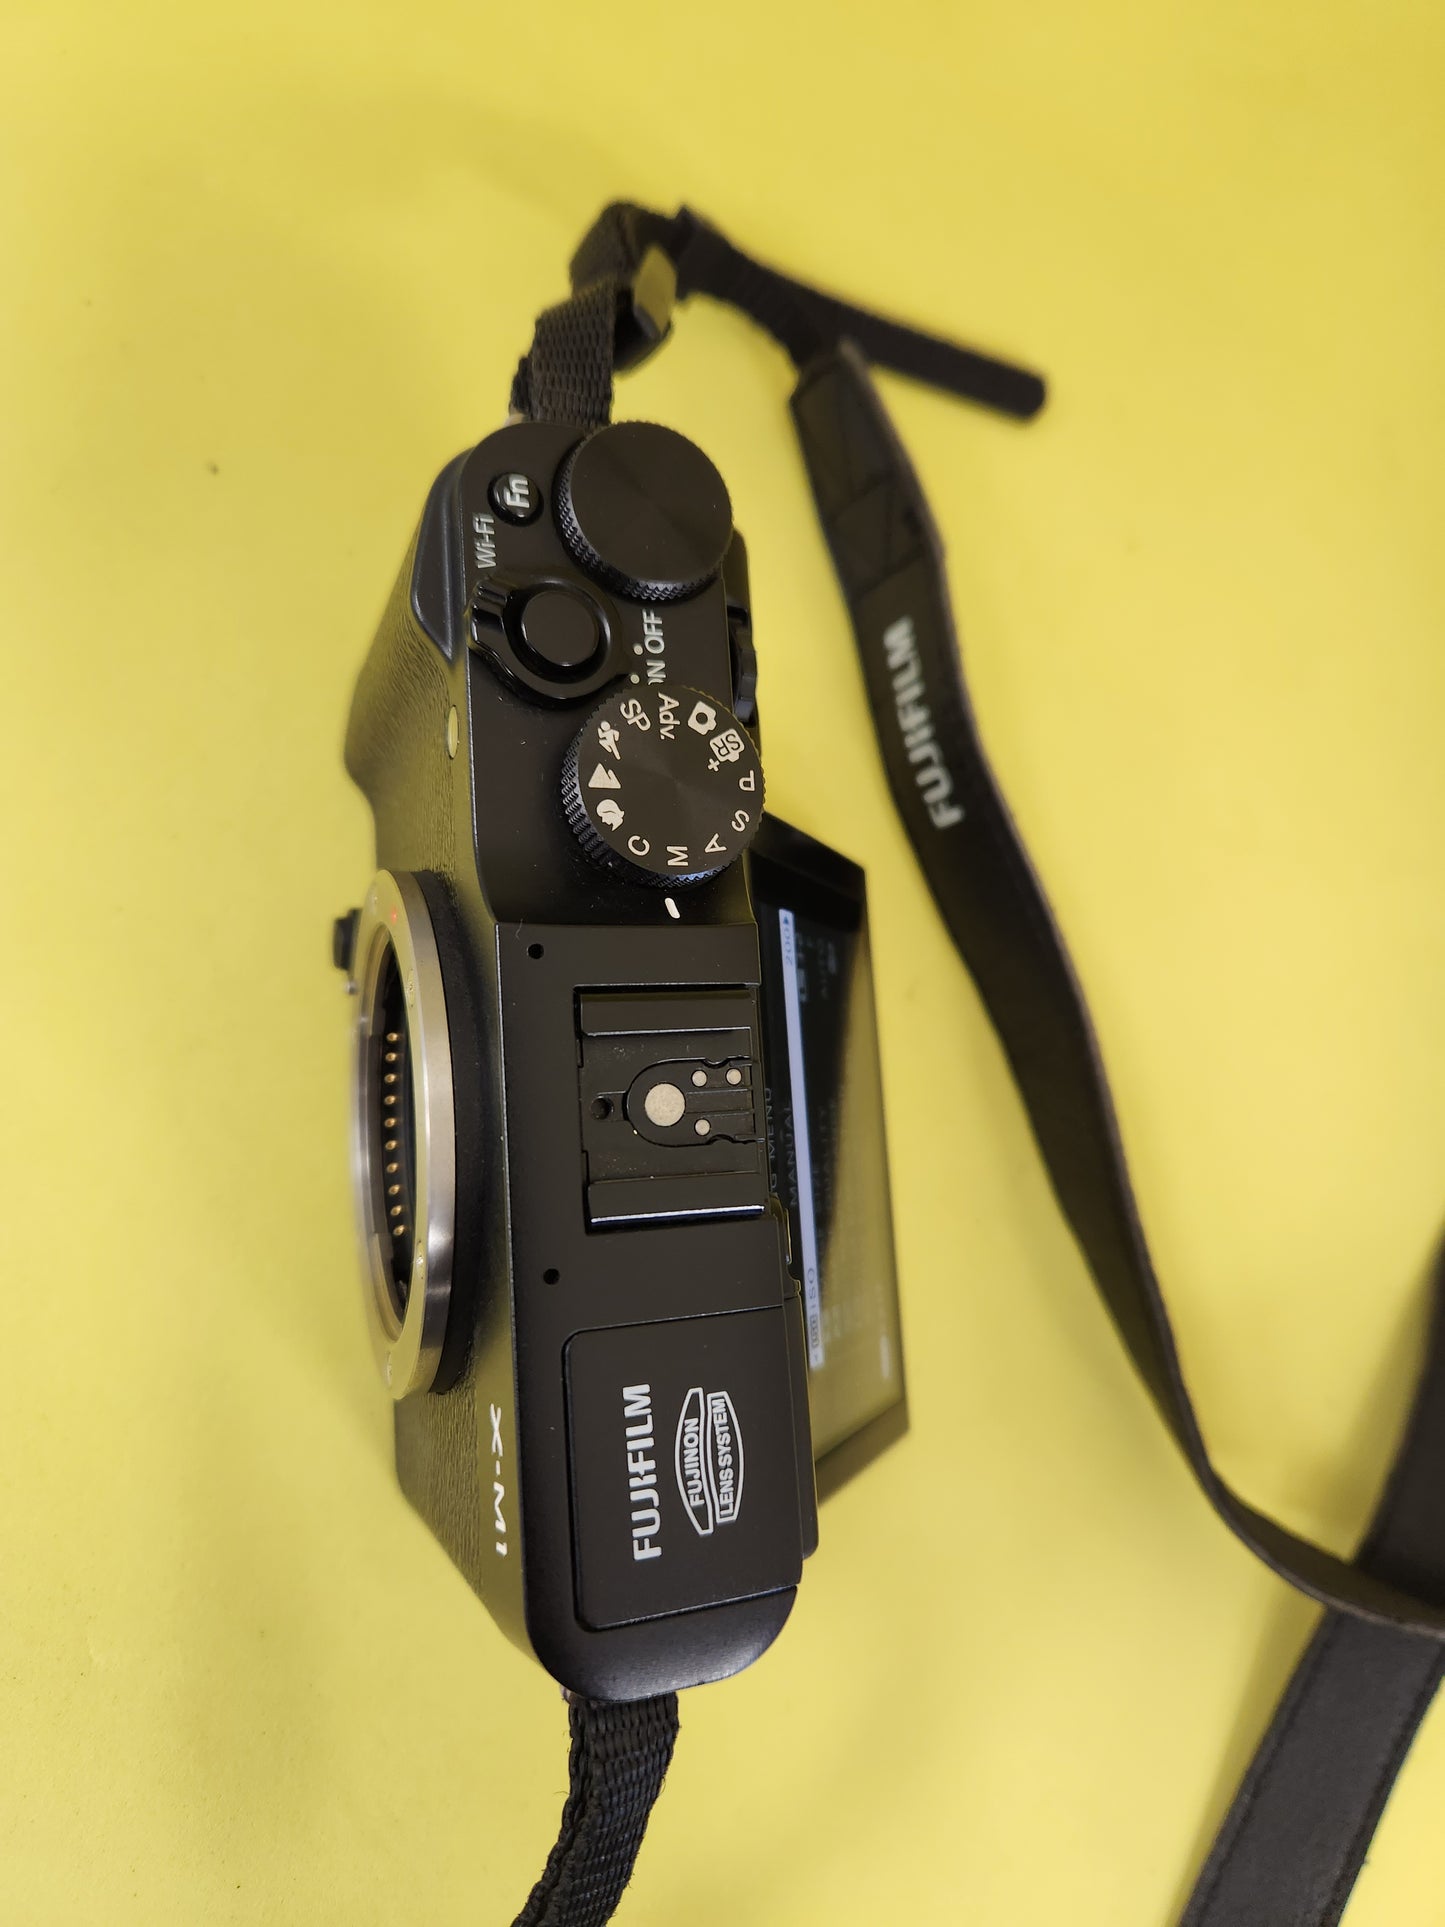 Fujifilm x-M1 body only with original Fujifilm battery